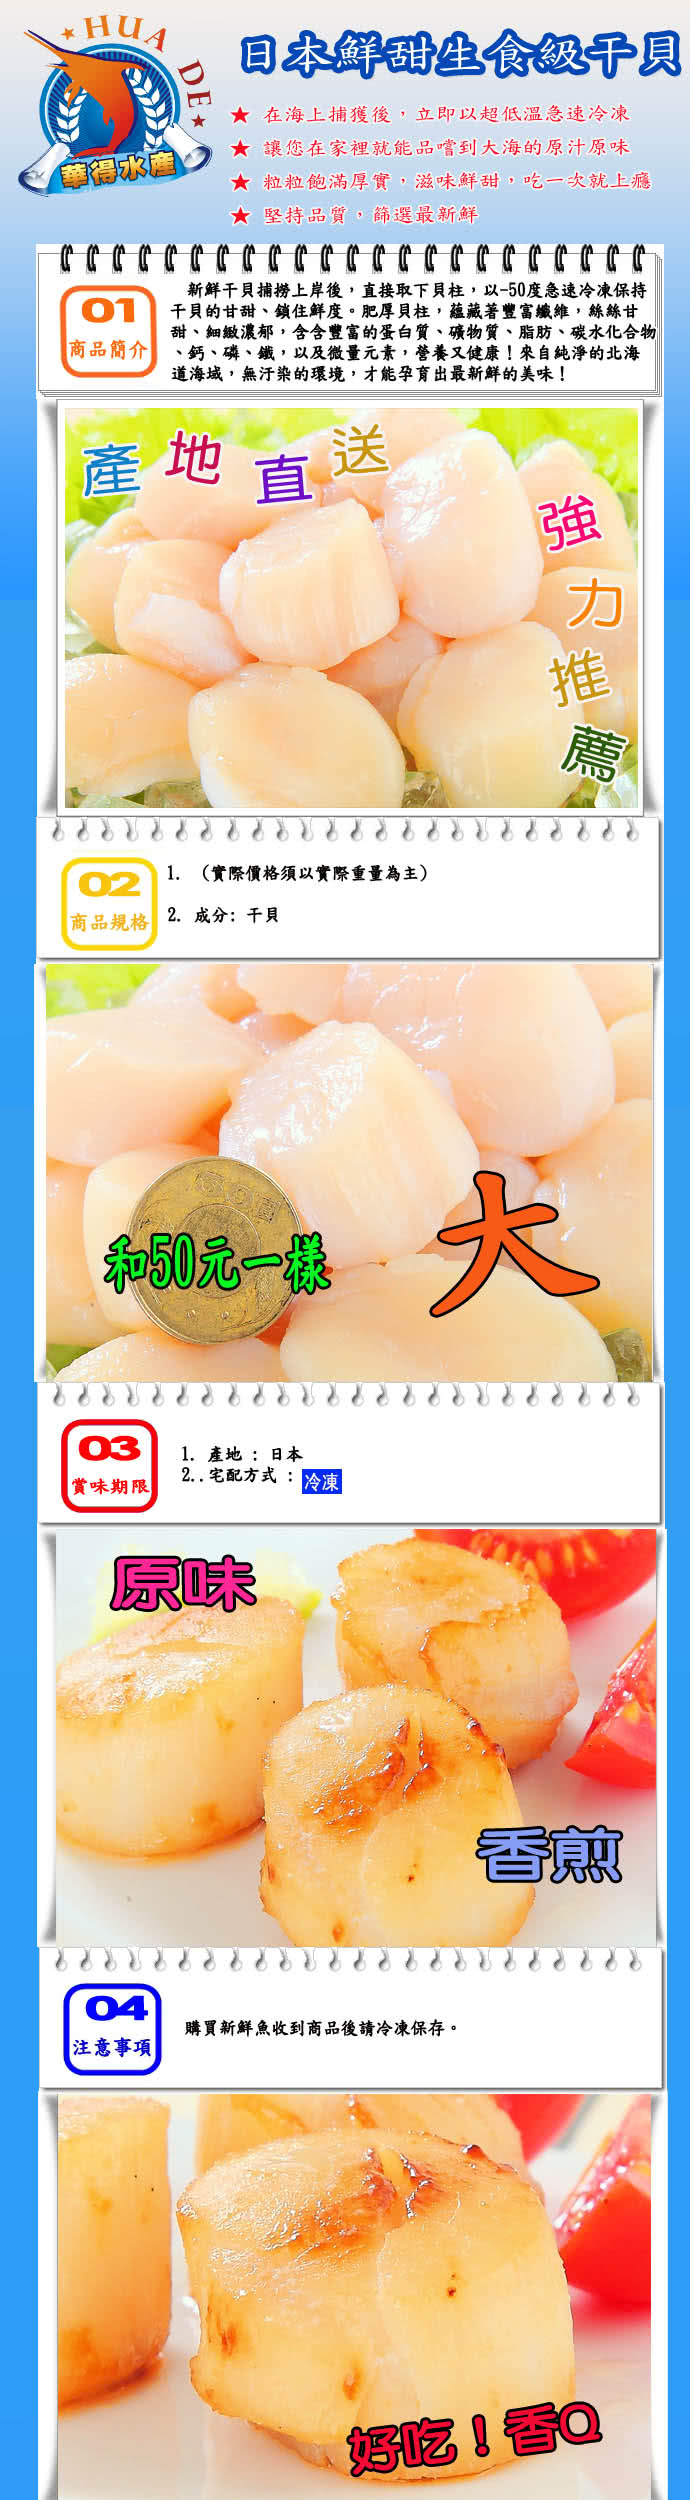 【華得水產】日本鮮甜生食級干貝1件組(500g/包)